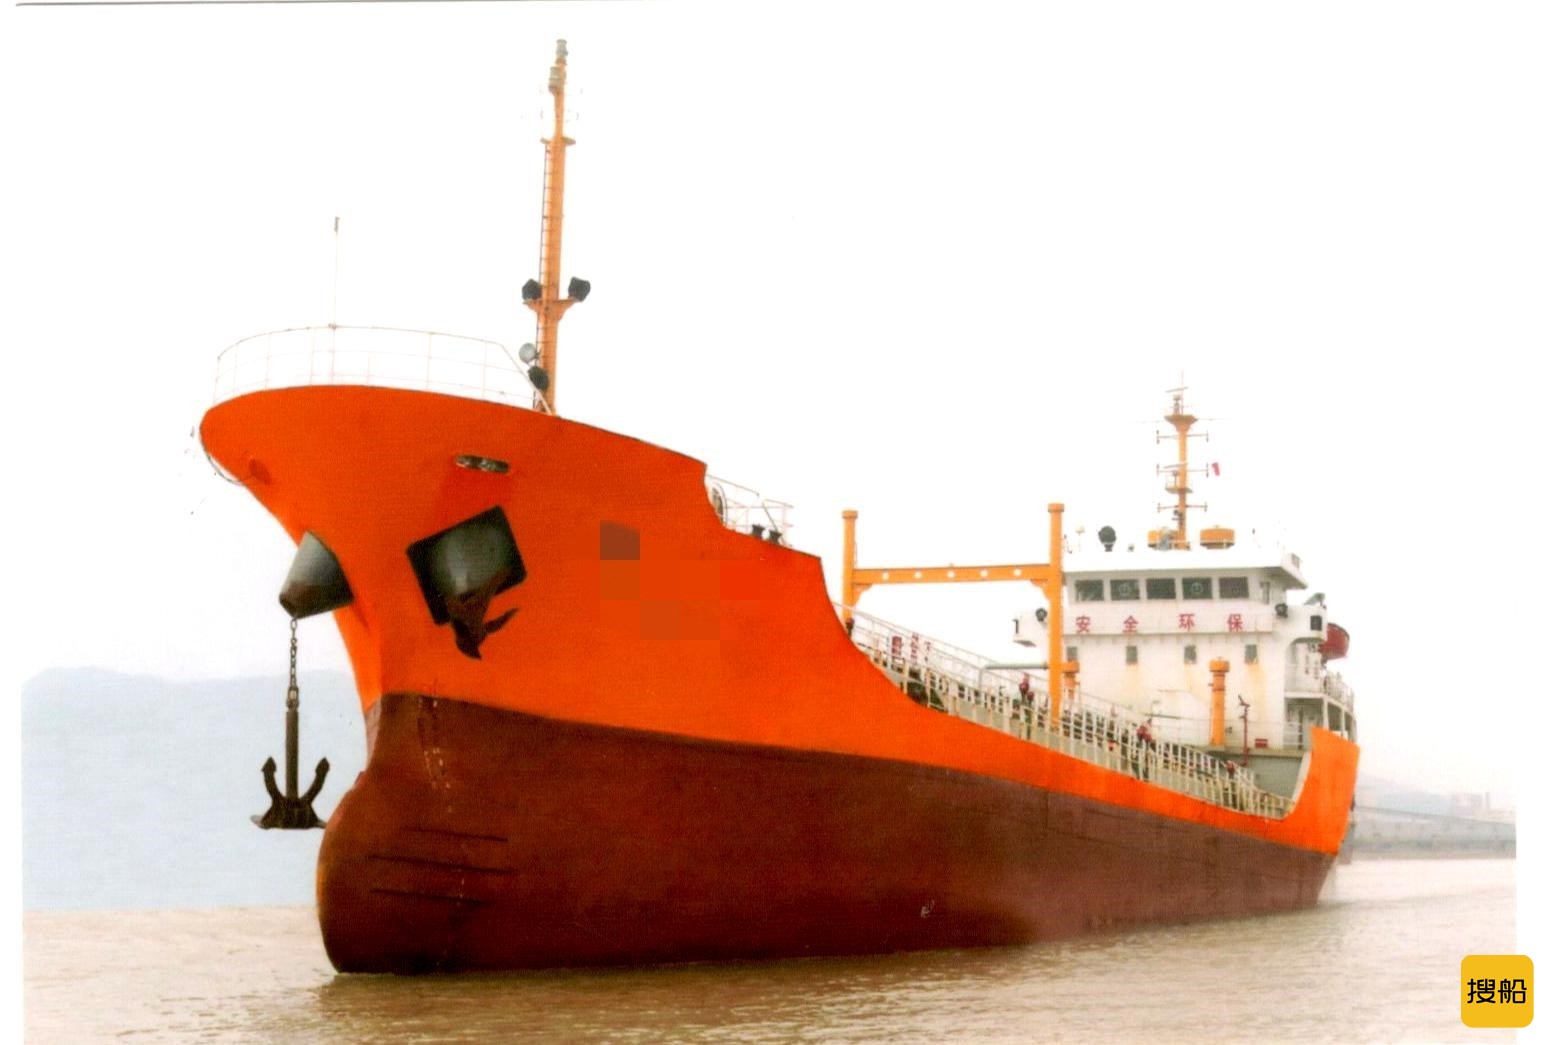 出卖2006年制作2415载重吨无动力油船 江苏 北通市-2.jpg